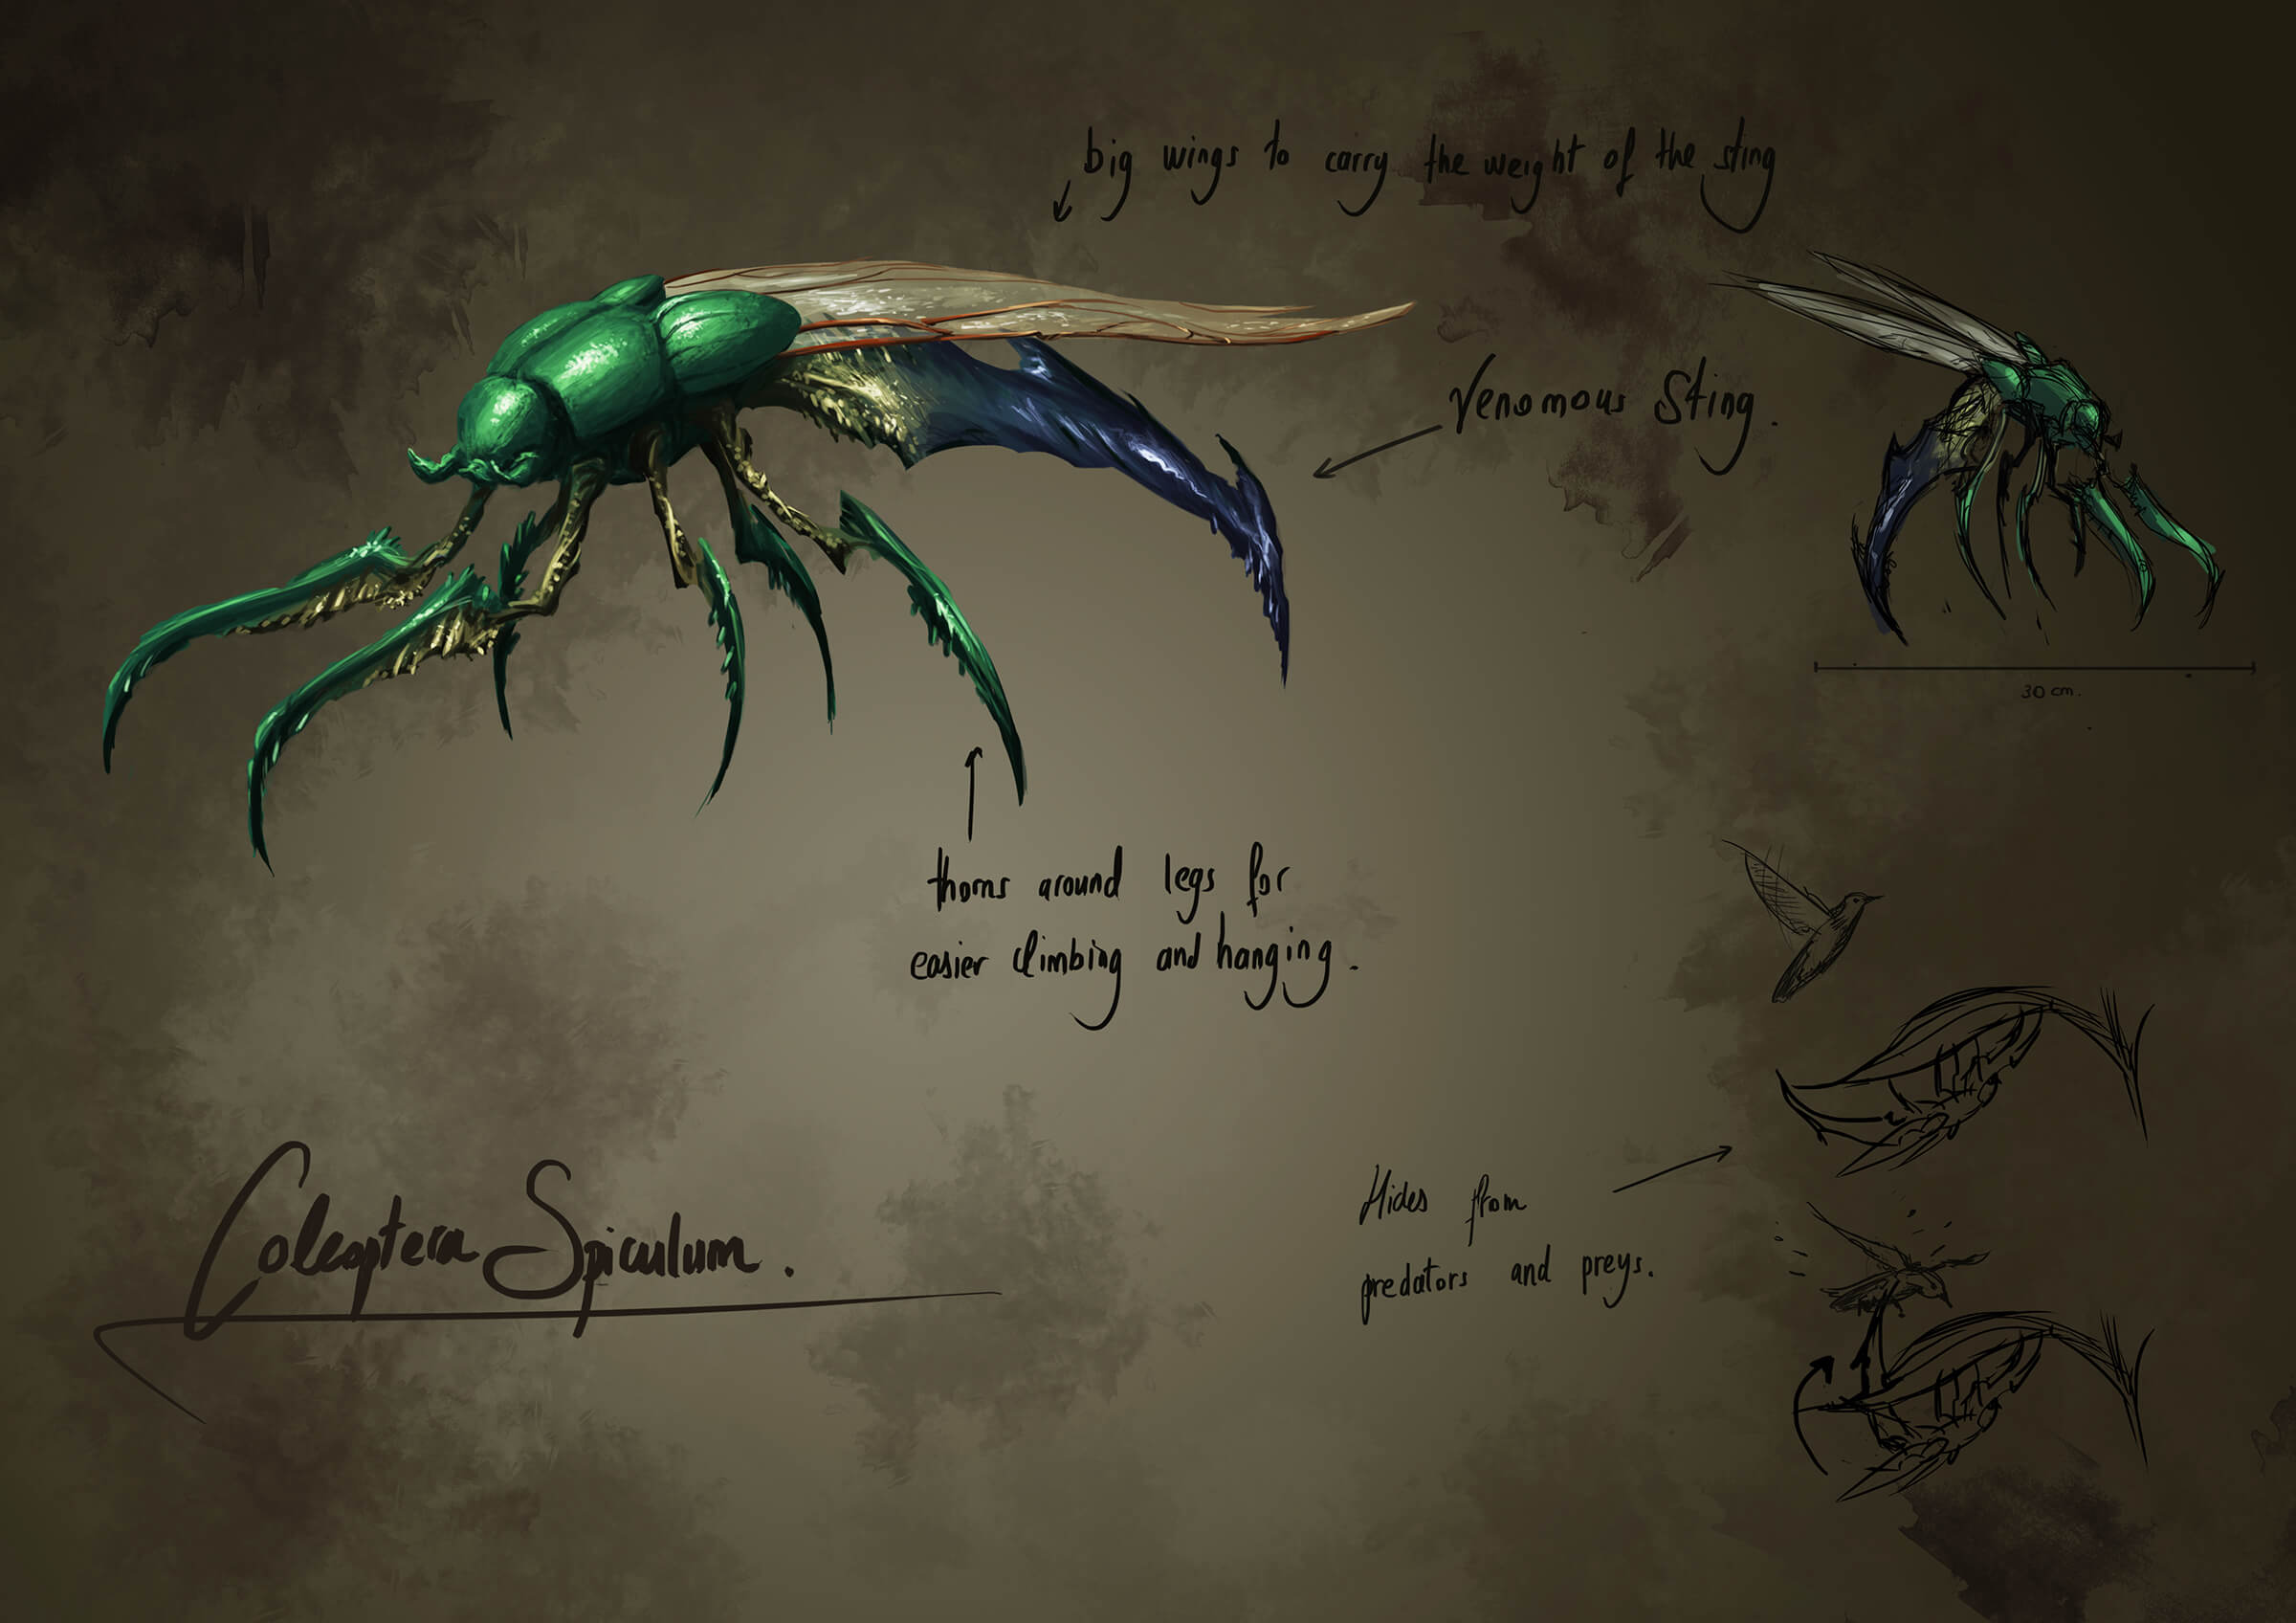 Arte conceptual de un escarabajo alienígena verde con patas largas en forma de garra y un temible aguijón azul que sobresale por detrás.